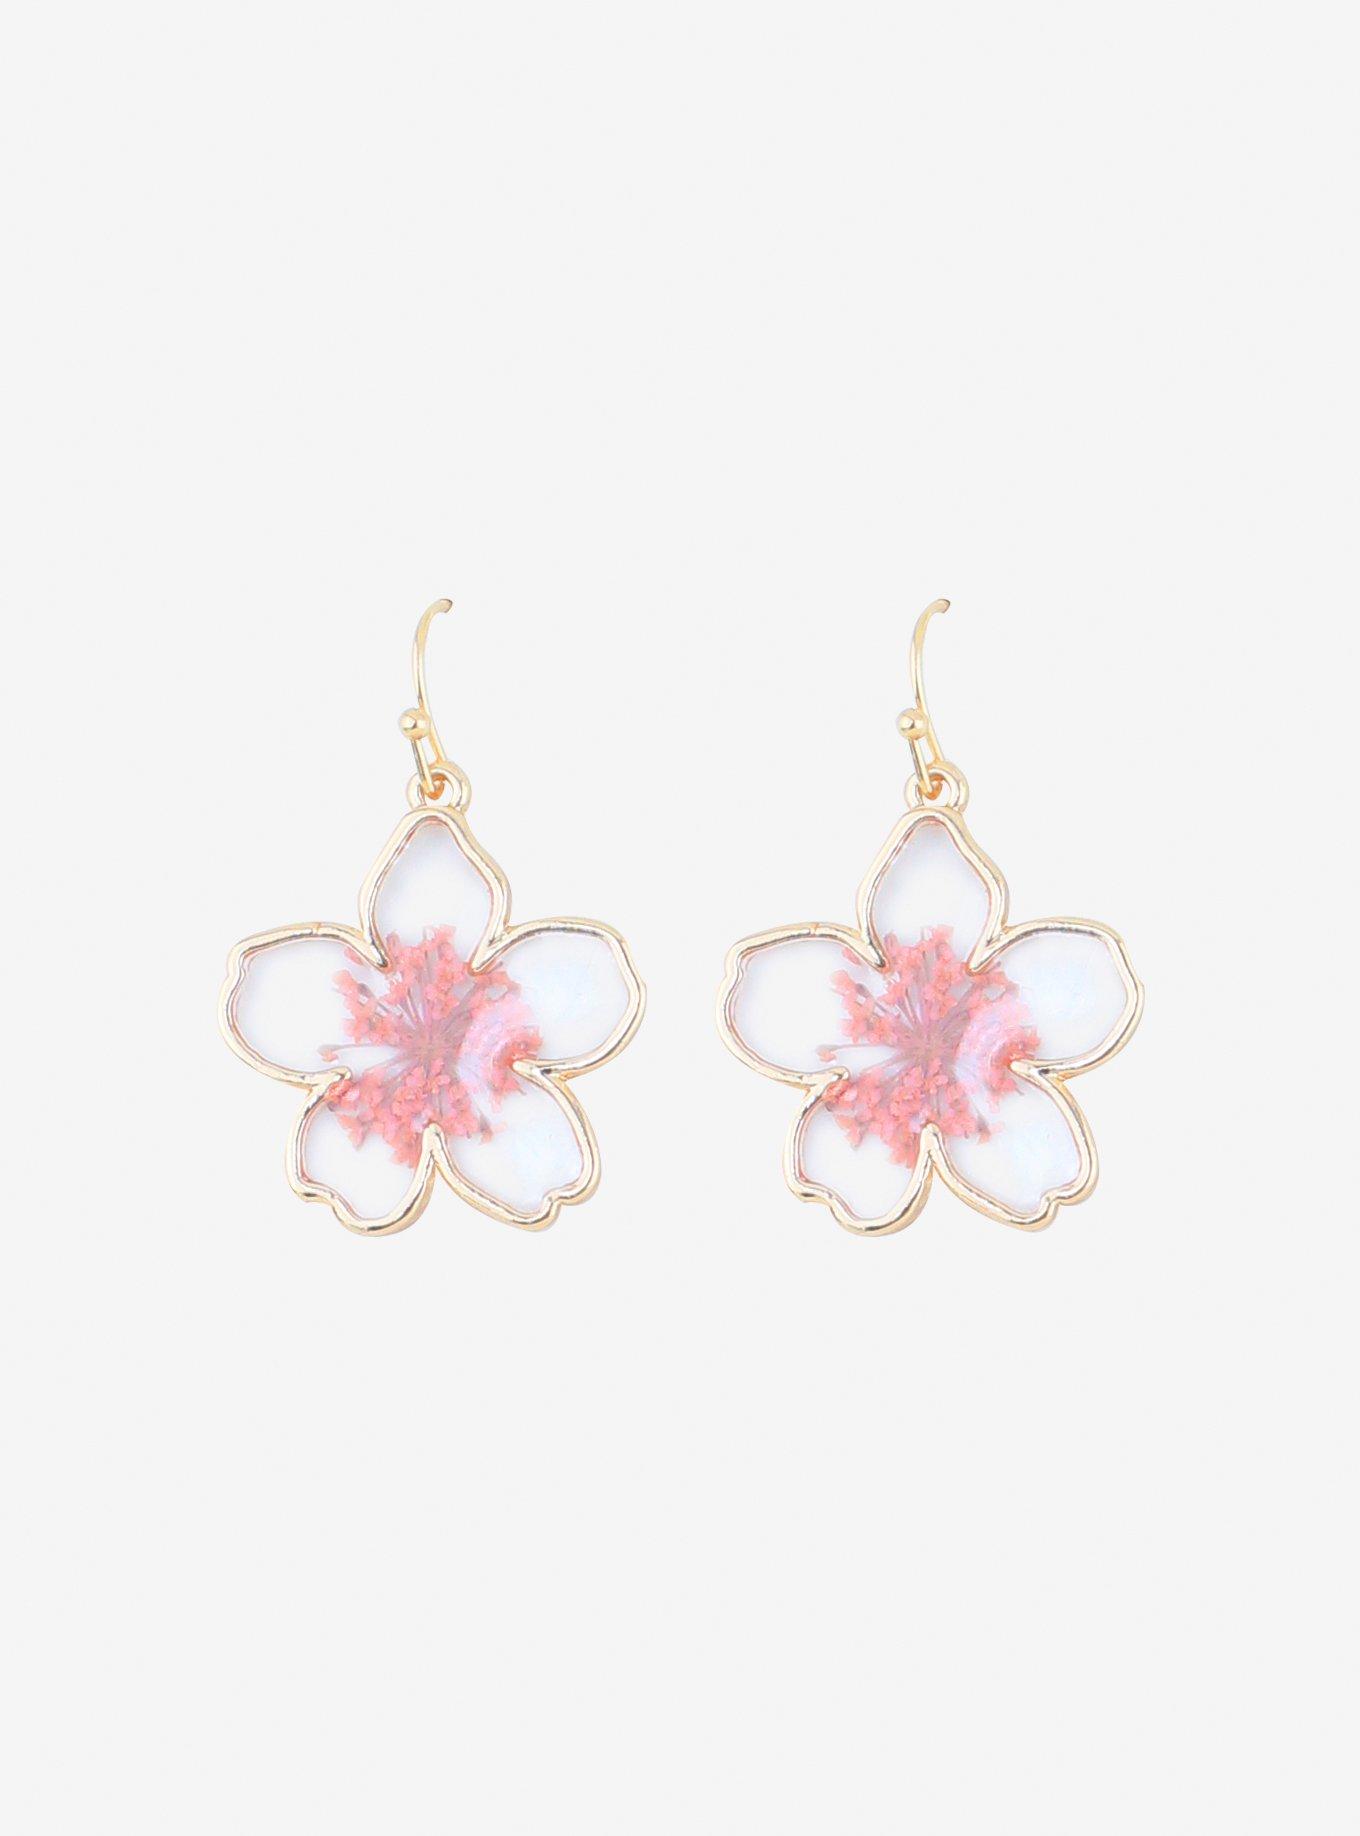 Big Sakura Cherry Blossom Translucent Flower Dangle Earrings